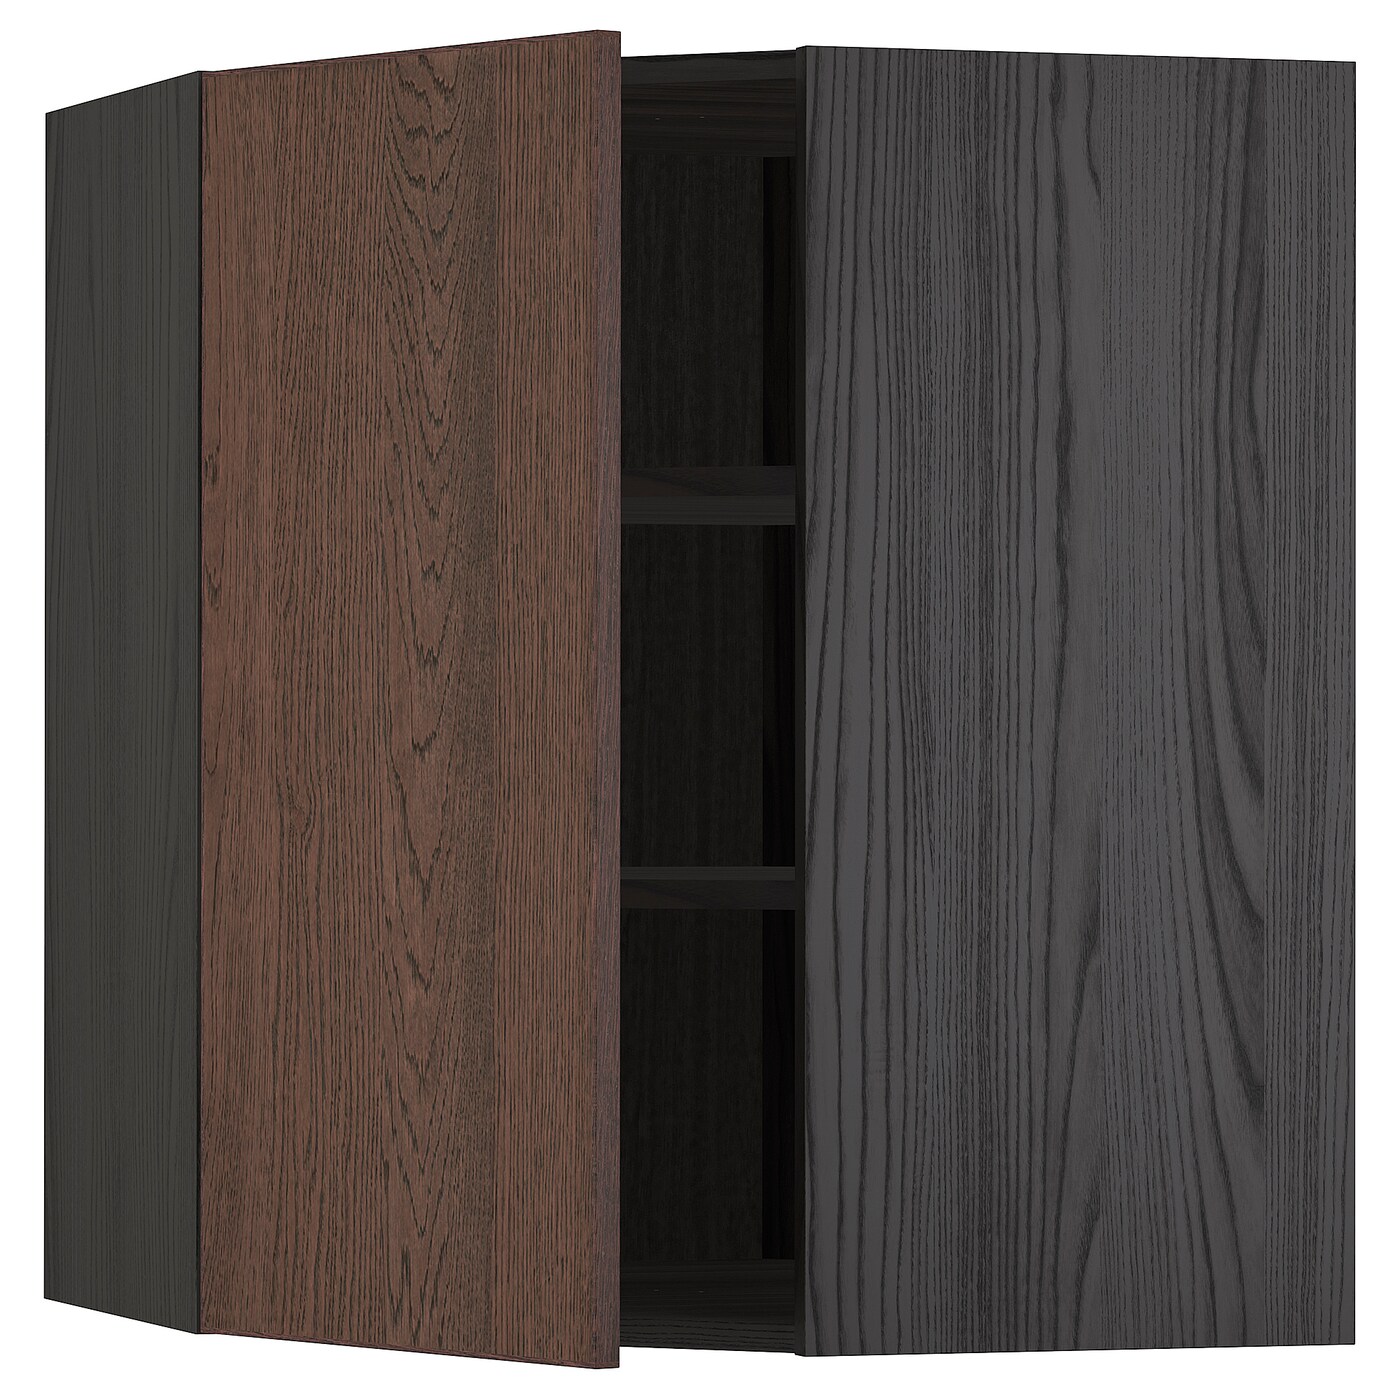 Угловой навесной шкаф с полками - METOD  IKEA/  МЕТОД ИКЕА, 80х68 см, черный/коричневый